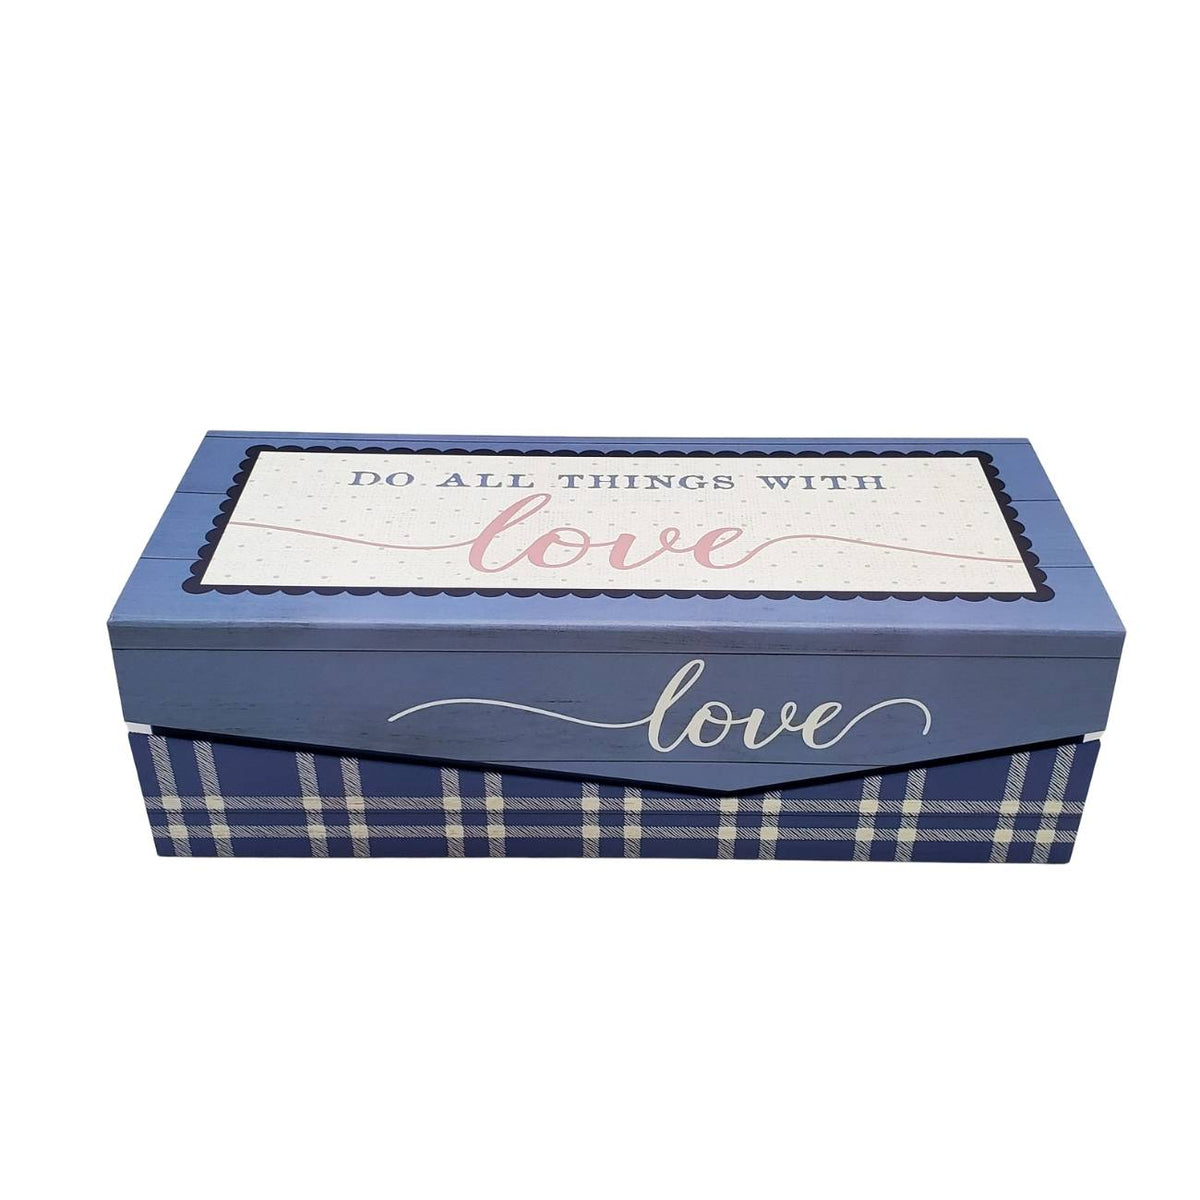 Handmade Goat Milk Soap | Nine Bar Sampler Assortment | Gift Box for A Couple